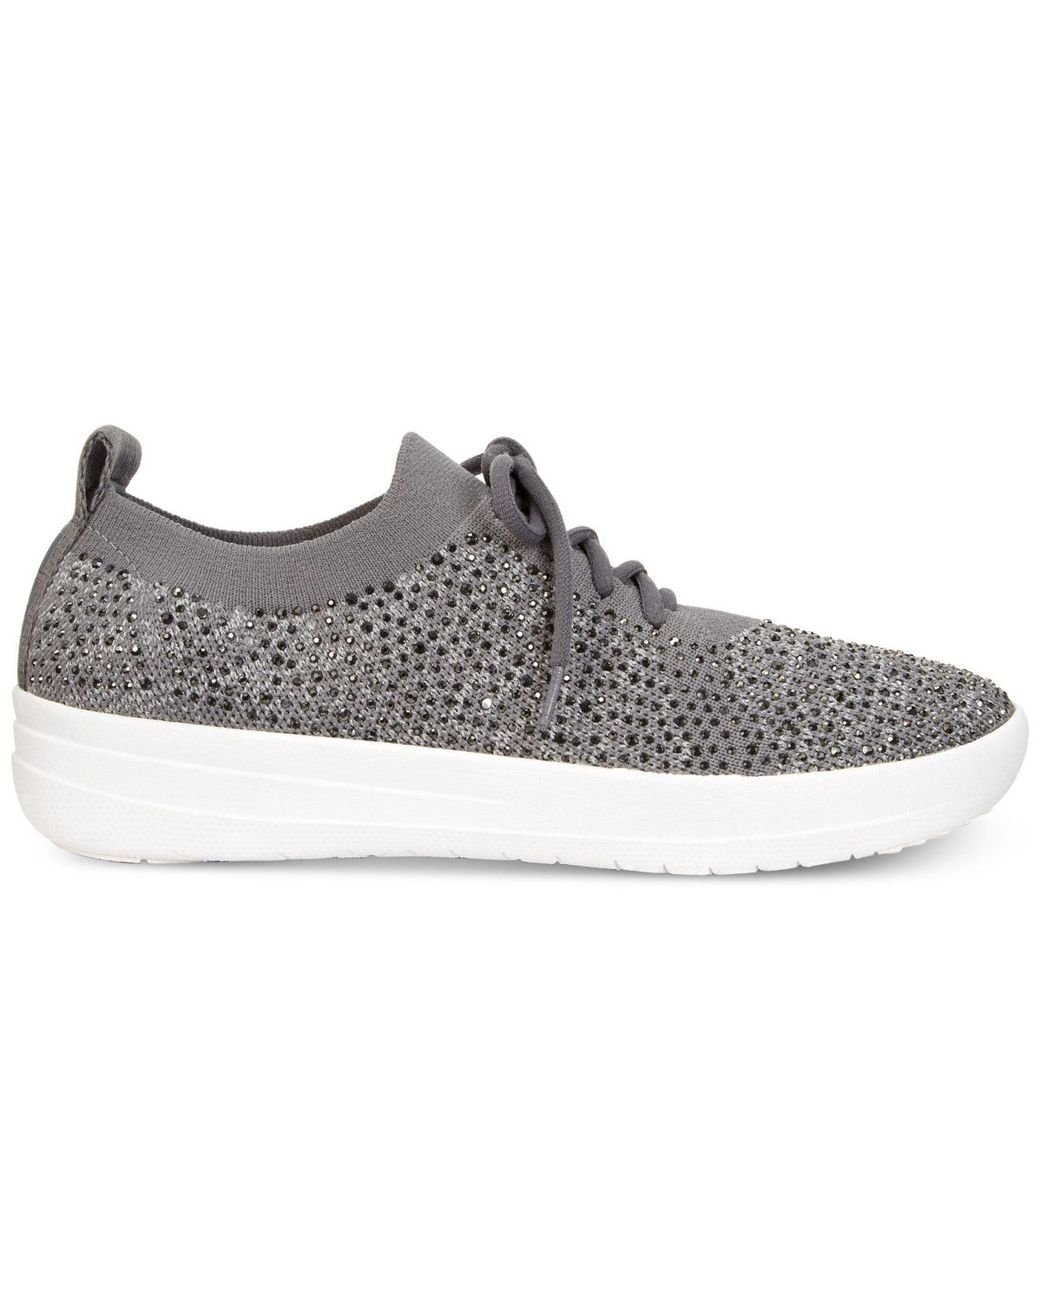 Fitflop F-sporty Uberknit Crystal Sneakers in Gray | Lyst